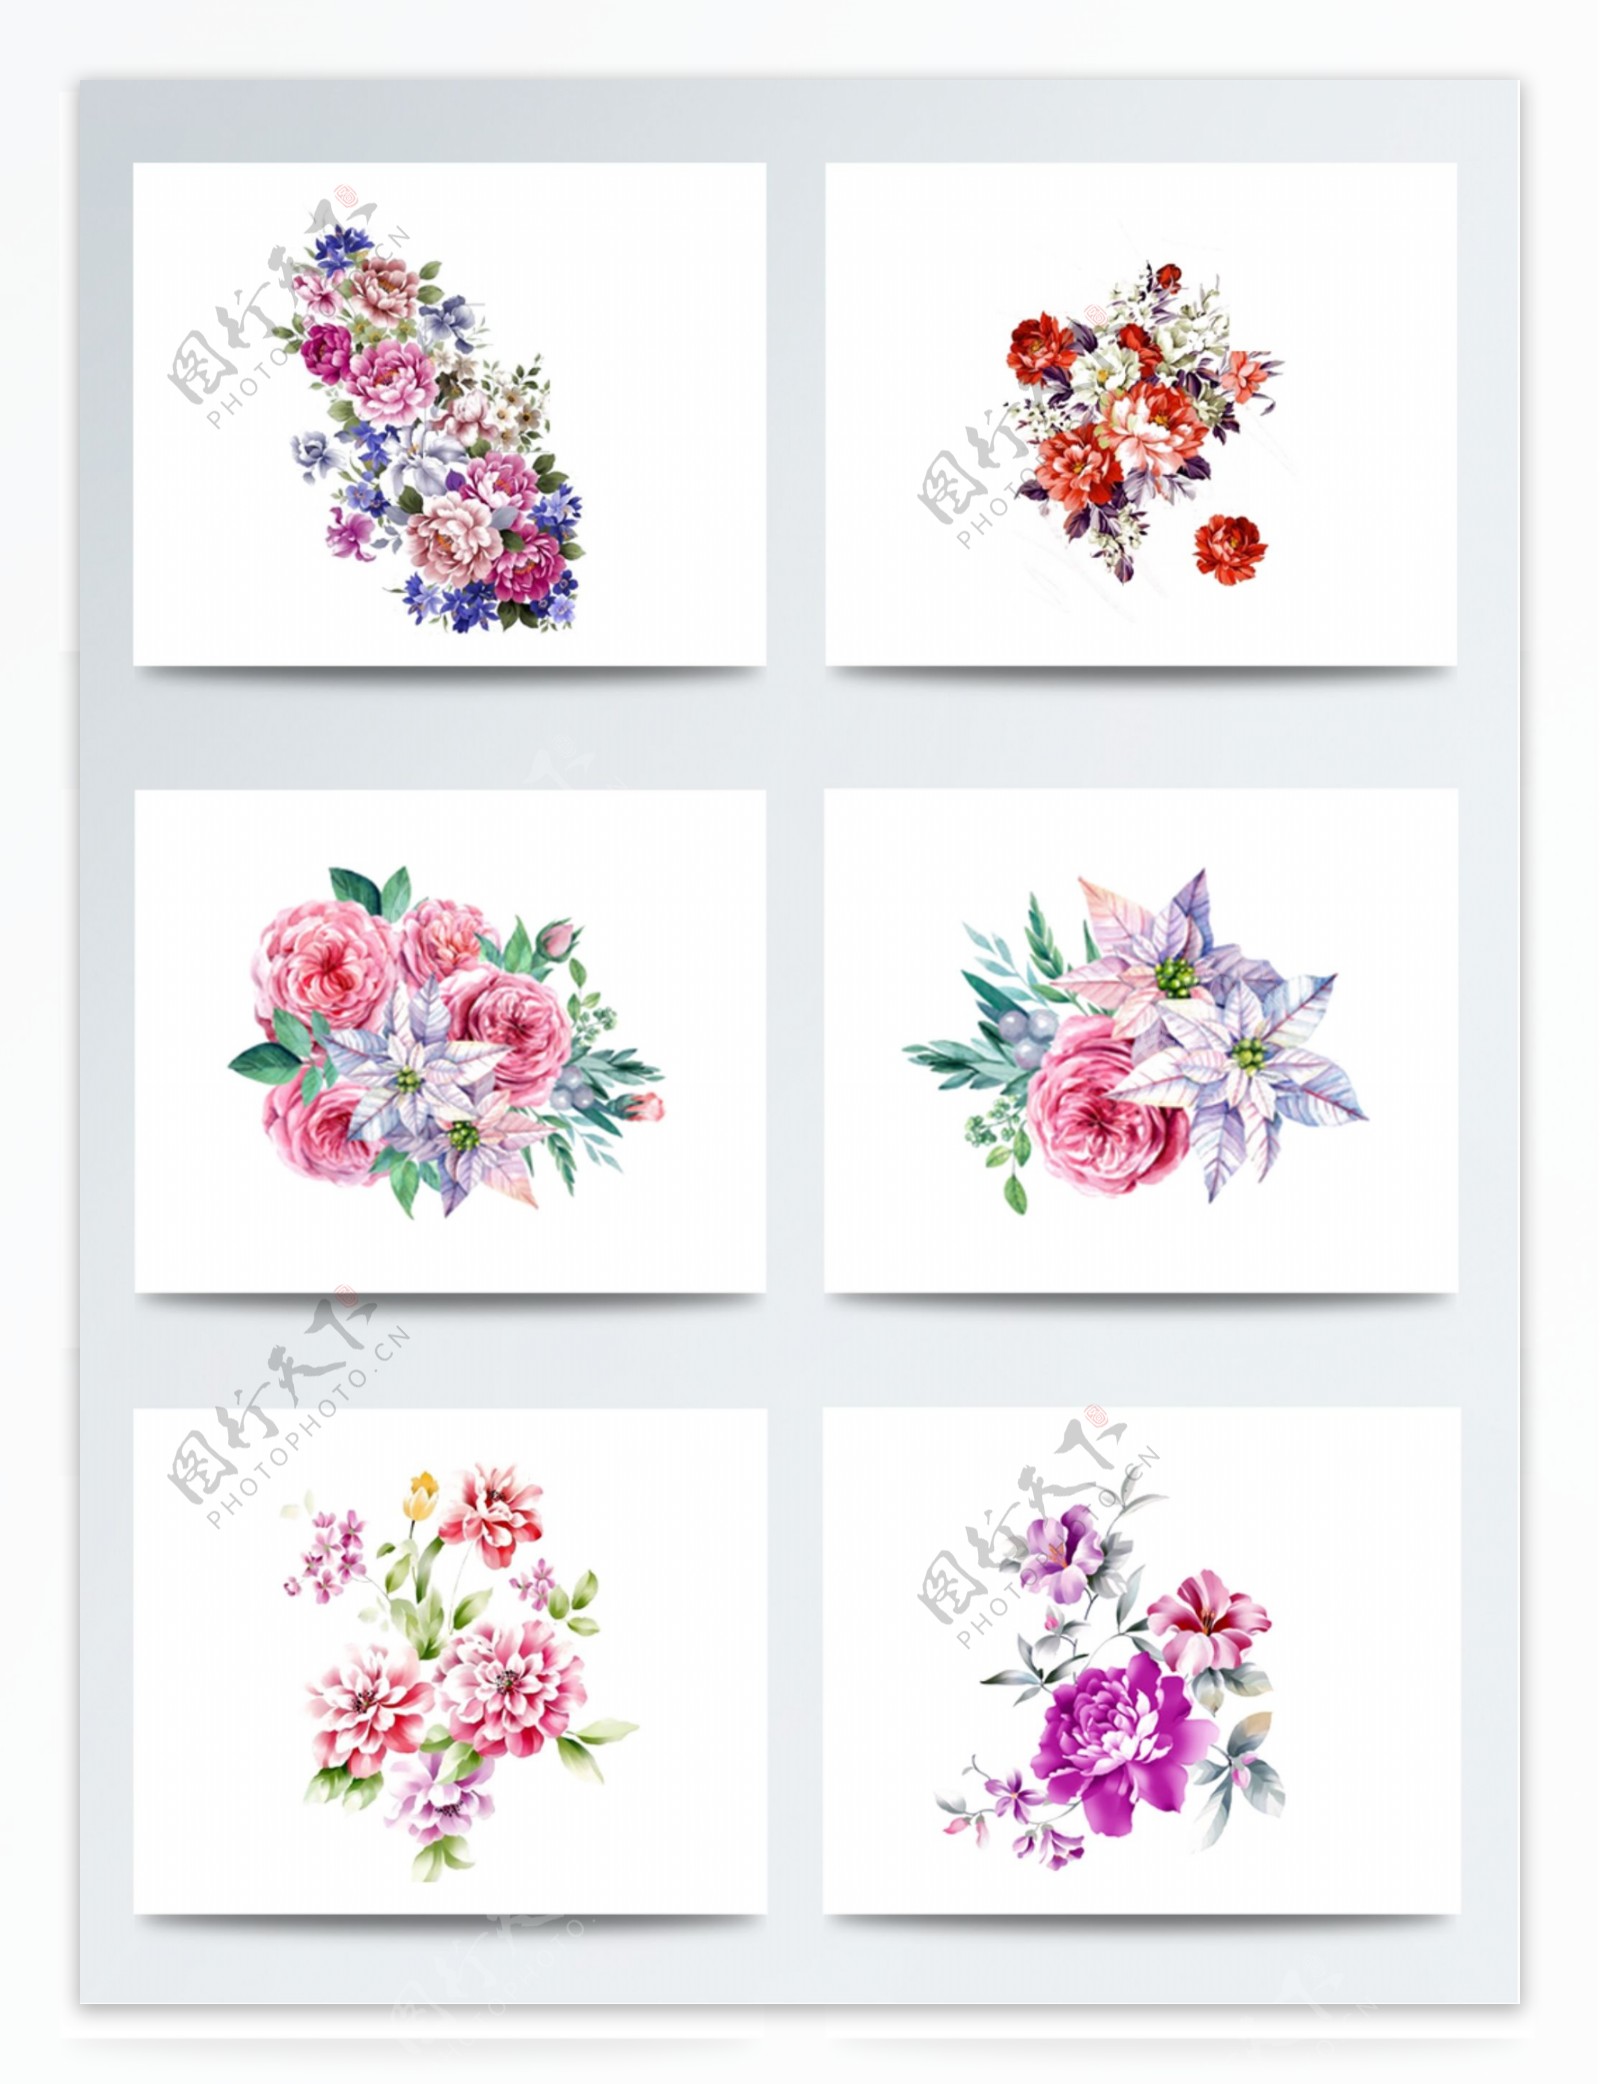 装饰水彩花卉图案